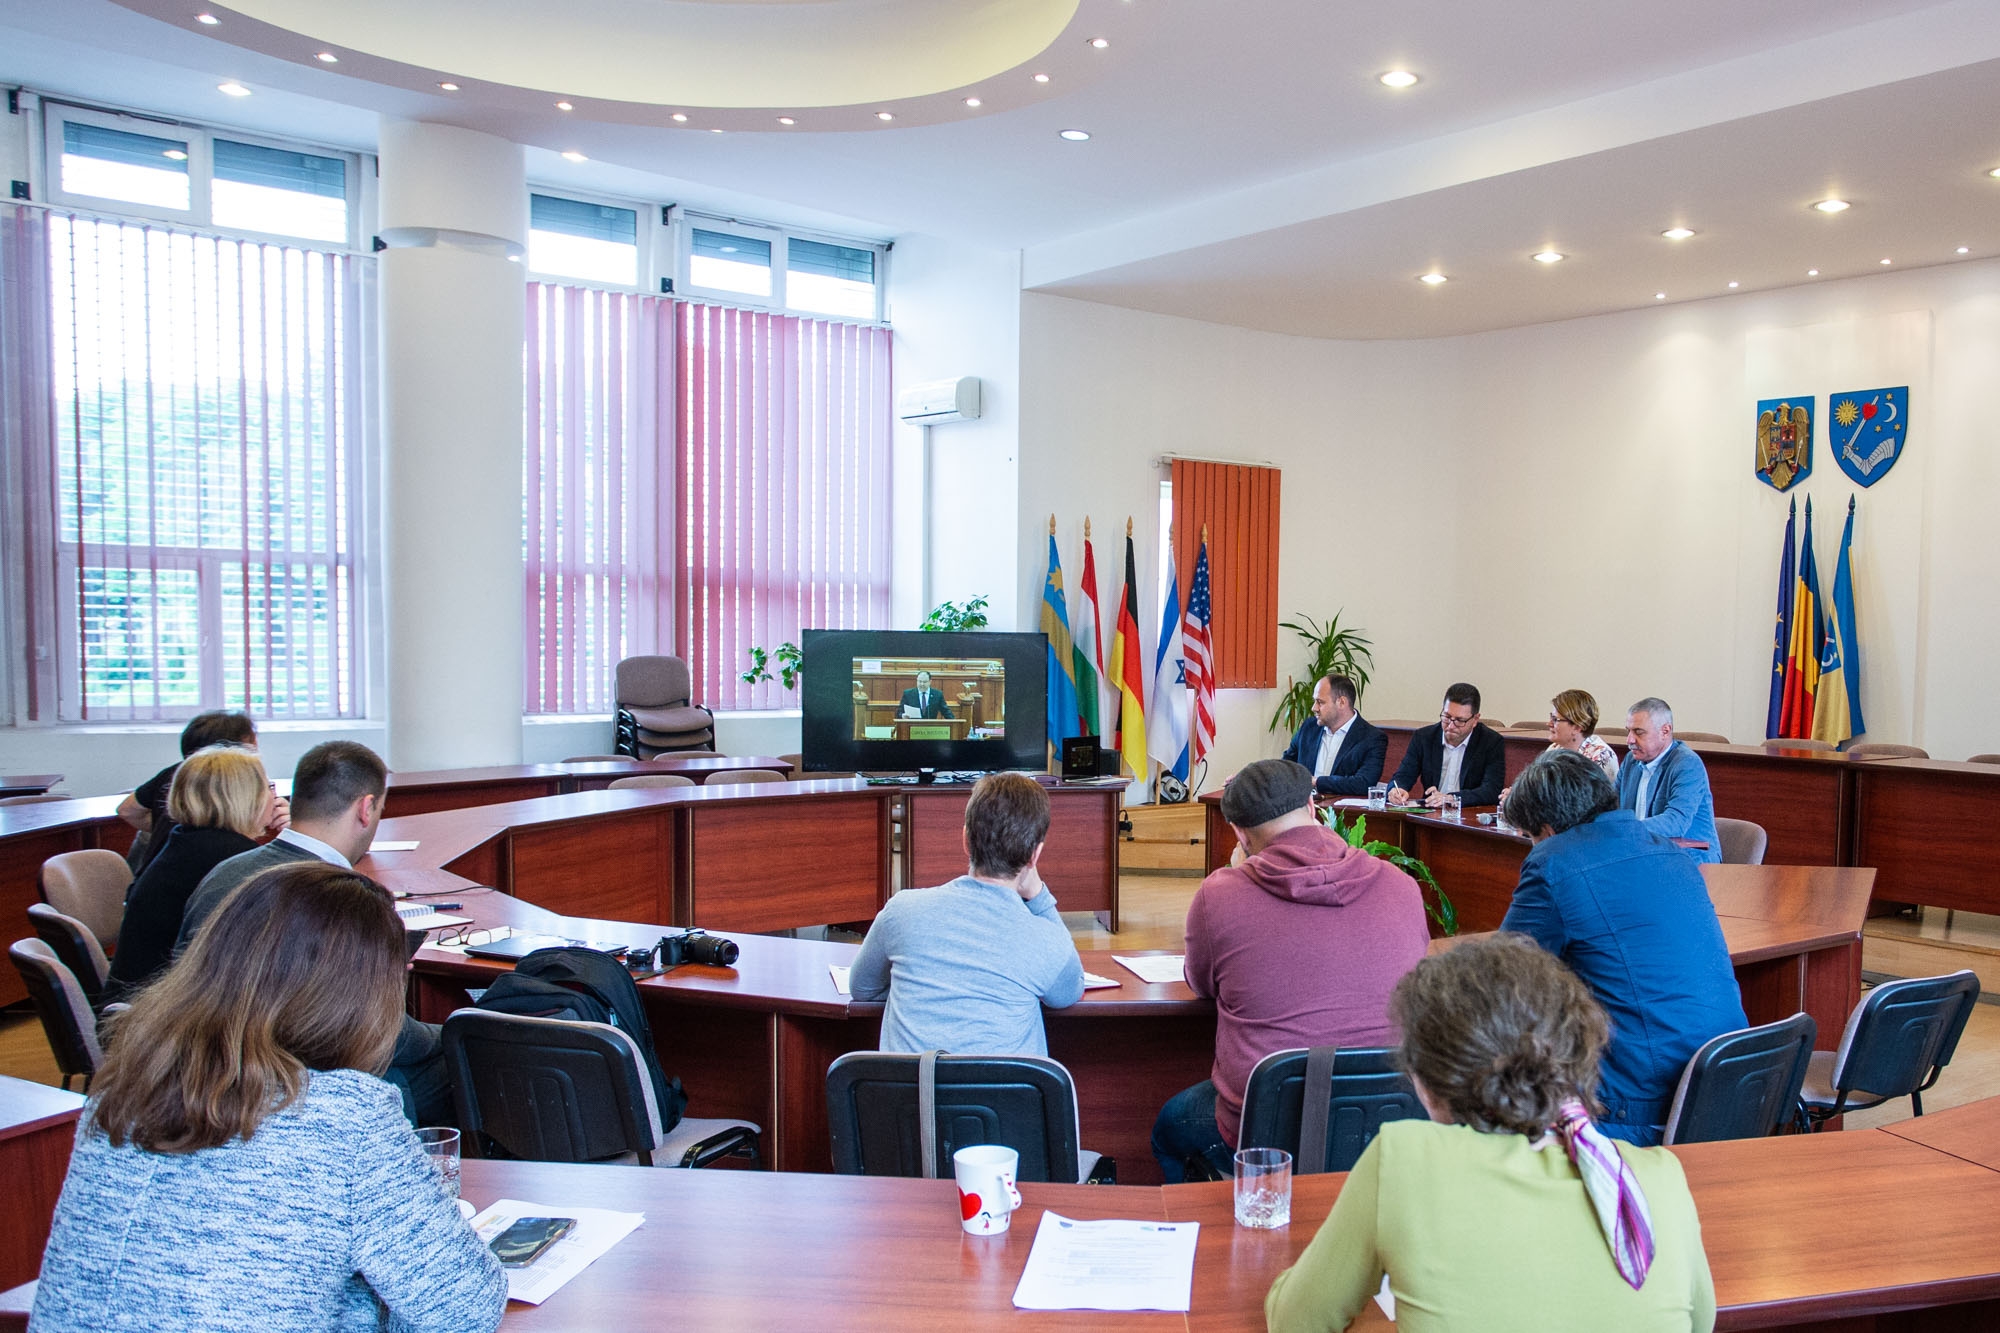 Utilizarea limbii materne – experienţe la faţa locului  Comisia de Guvernanță a Congresului Autorităților Locale și Regionale al Consiliului Europei își ține reuniunea la Băile Bálványos